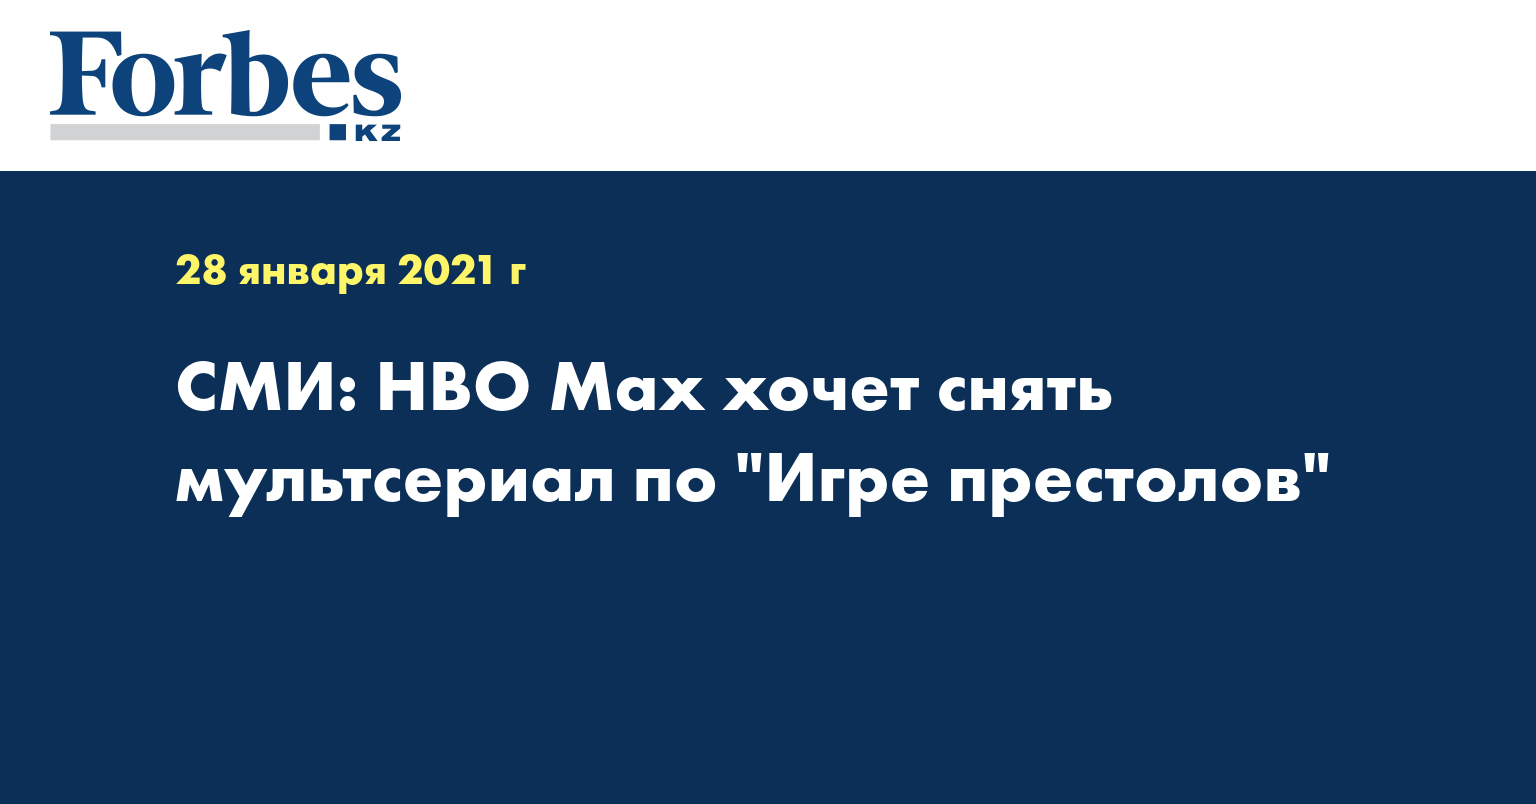 СМИ: HBO Max хочет снять мультсериал по 